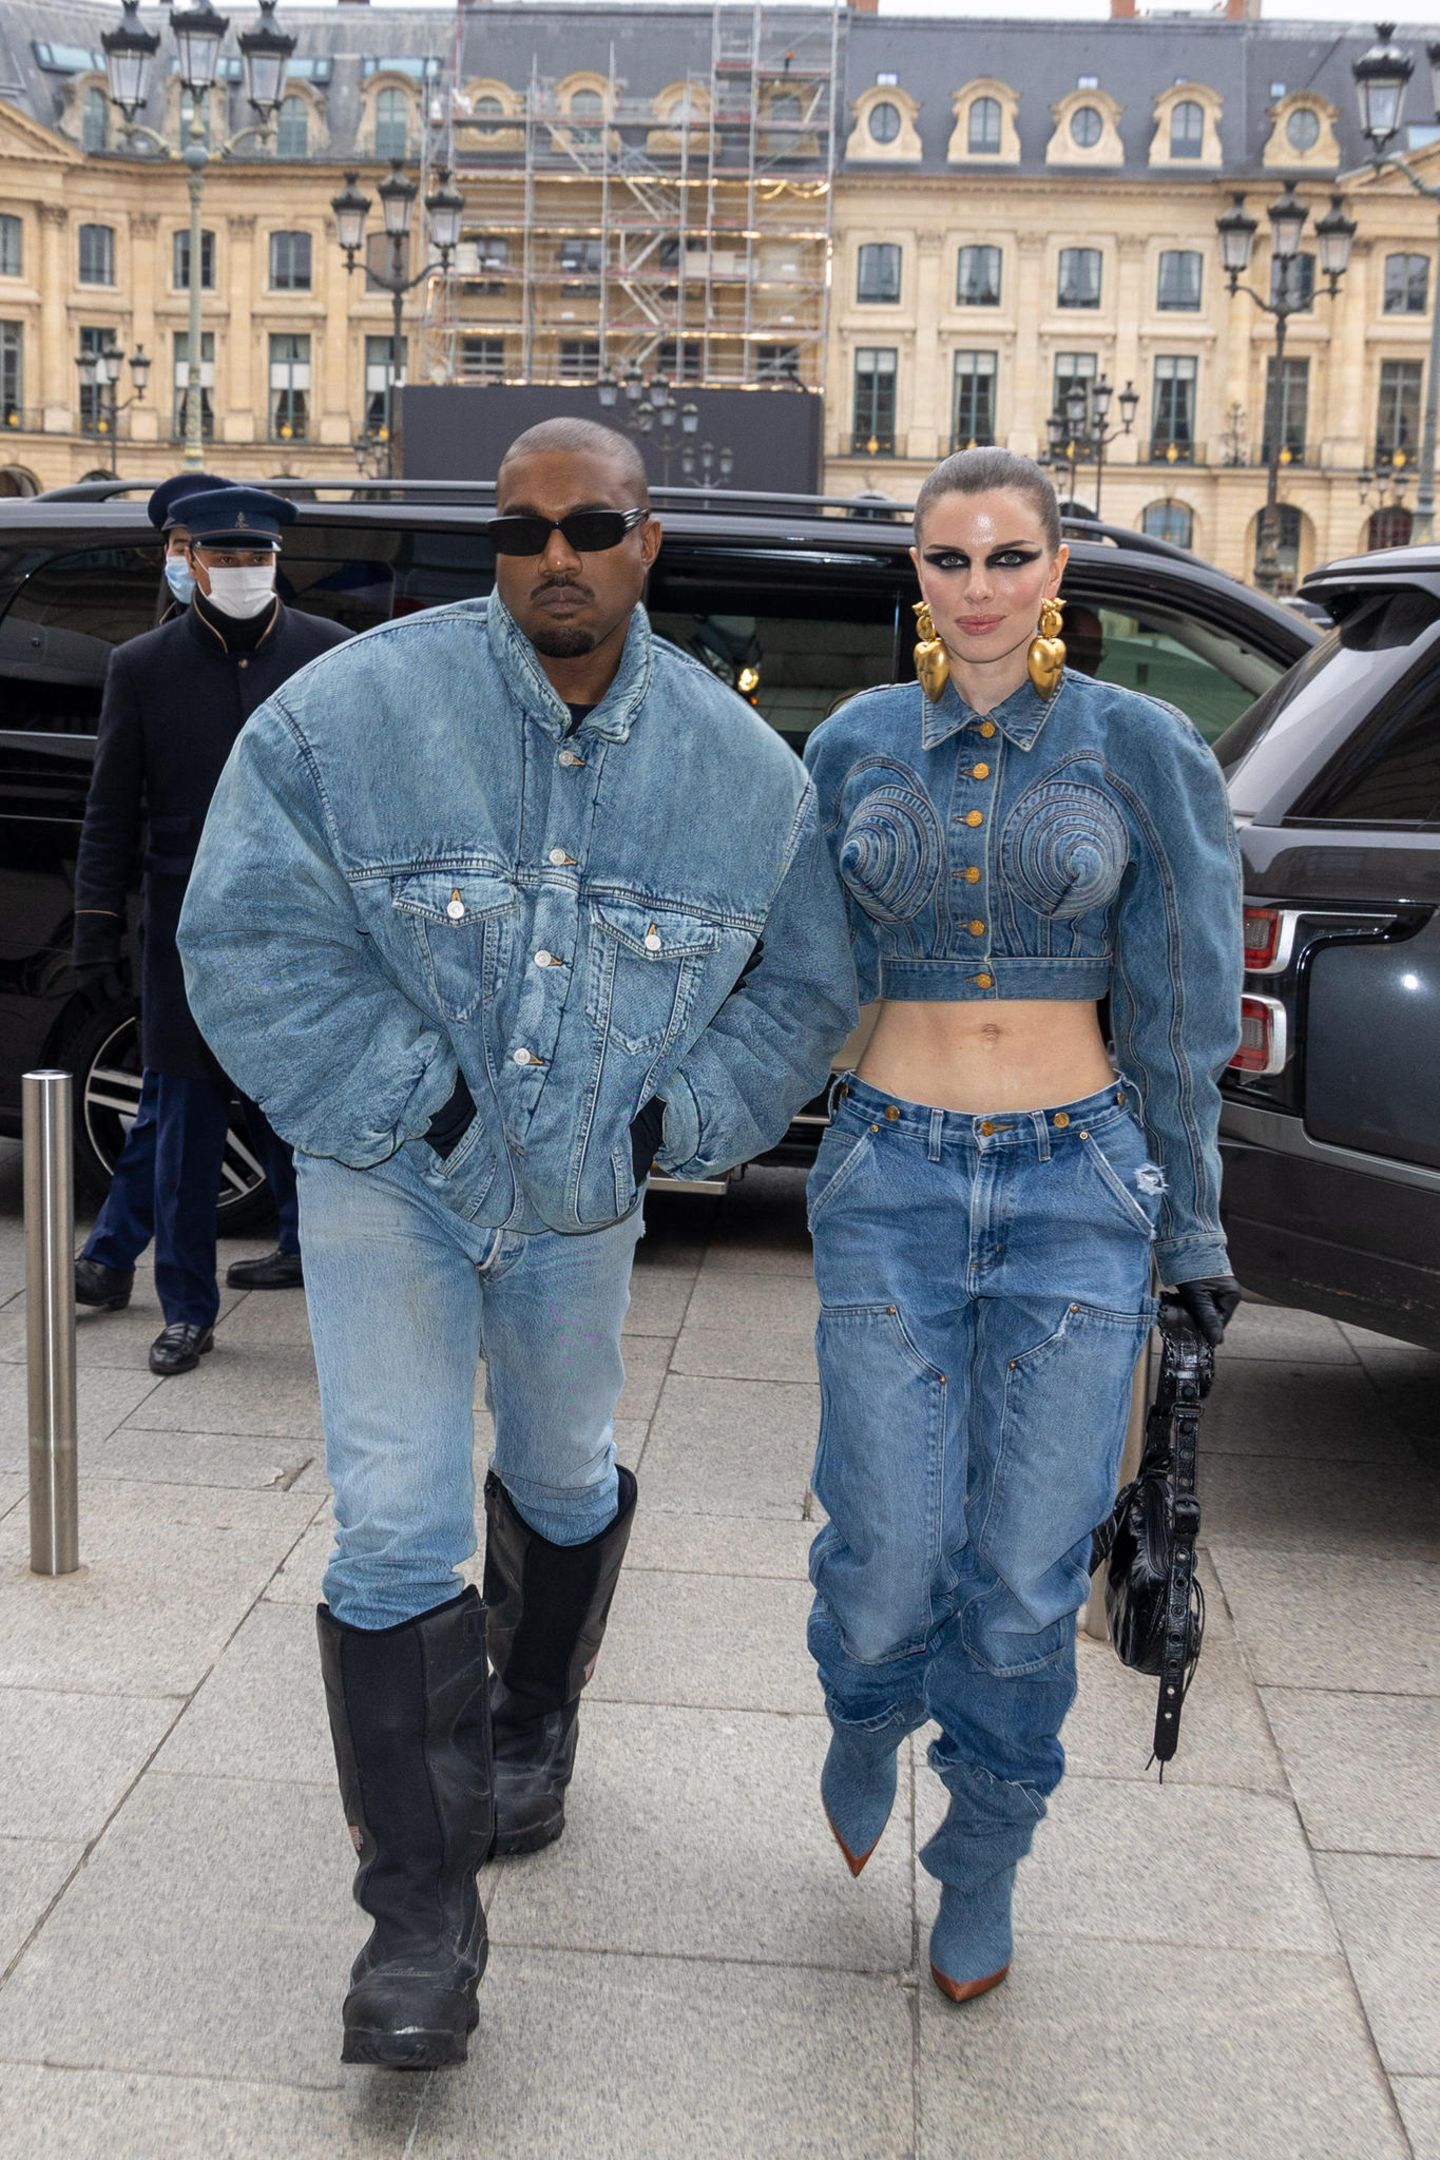 Wenn das kein Liebes-Outing ist! Kanye West und Julia Fox lassen es bei ihrem ersten gemeinsamen Besuch der Paris Fashion Week stylemäßig gleich so richtig krachen. Im exzentrischen Denim-Partnerlook besuchen sie die Show des Modelabels Kenzo.